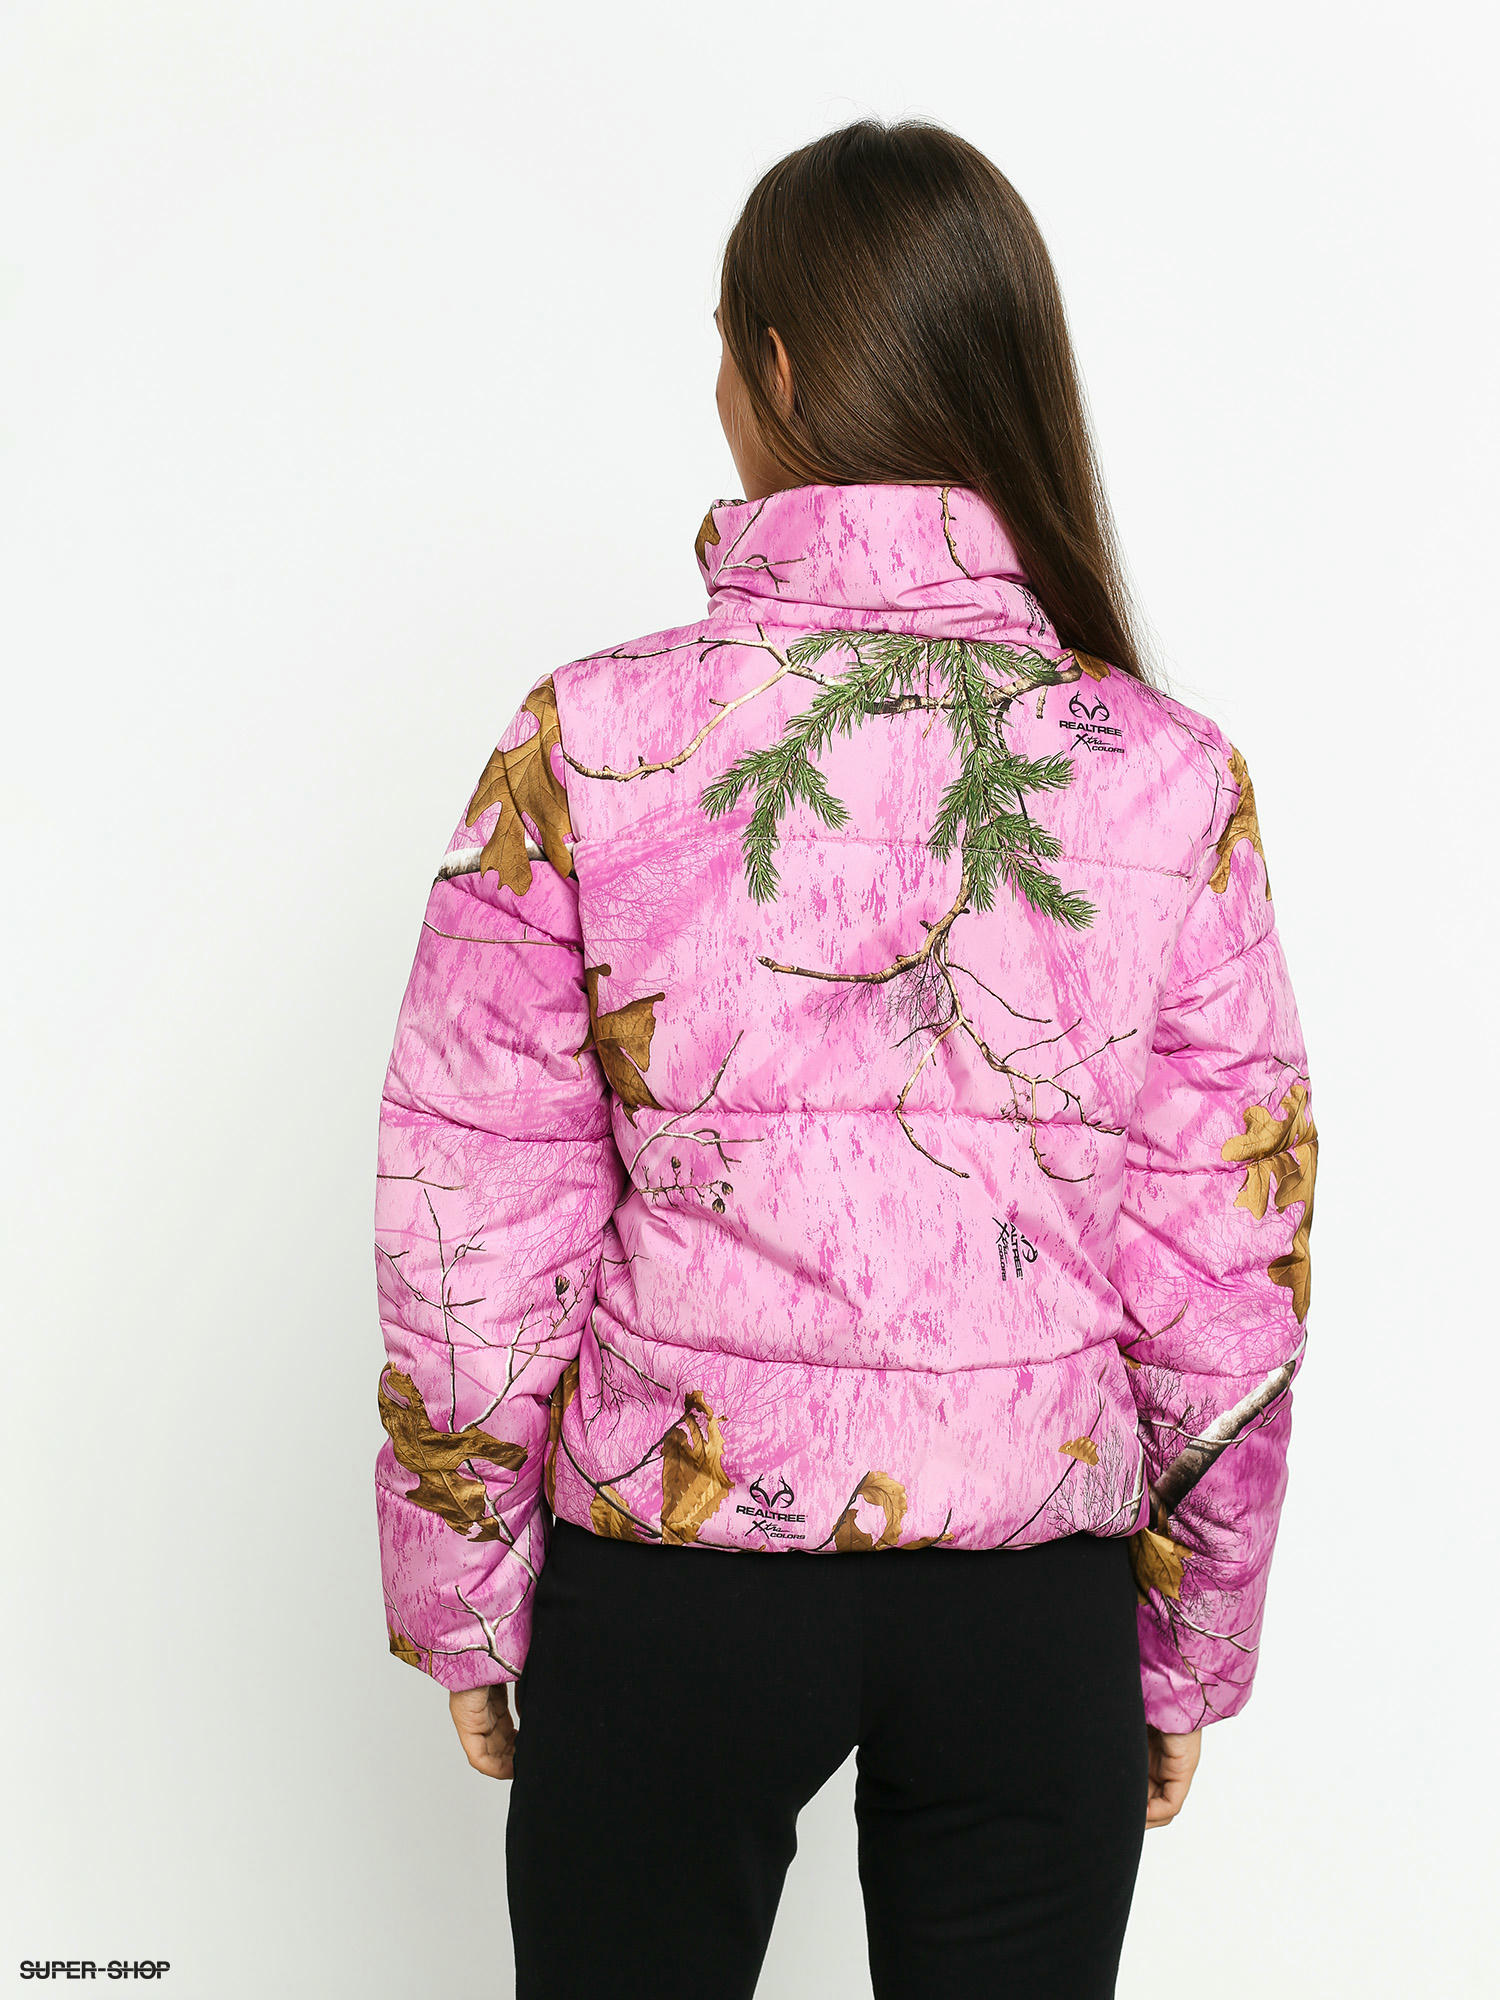 vans pink jacket